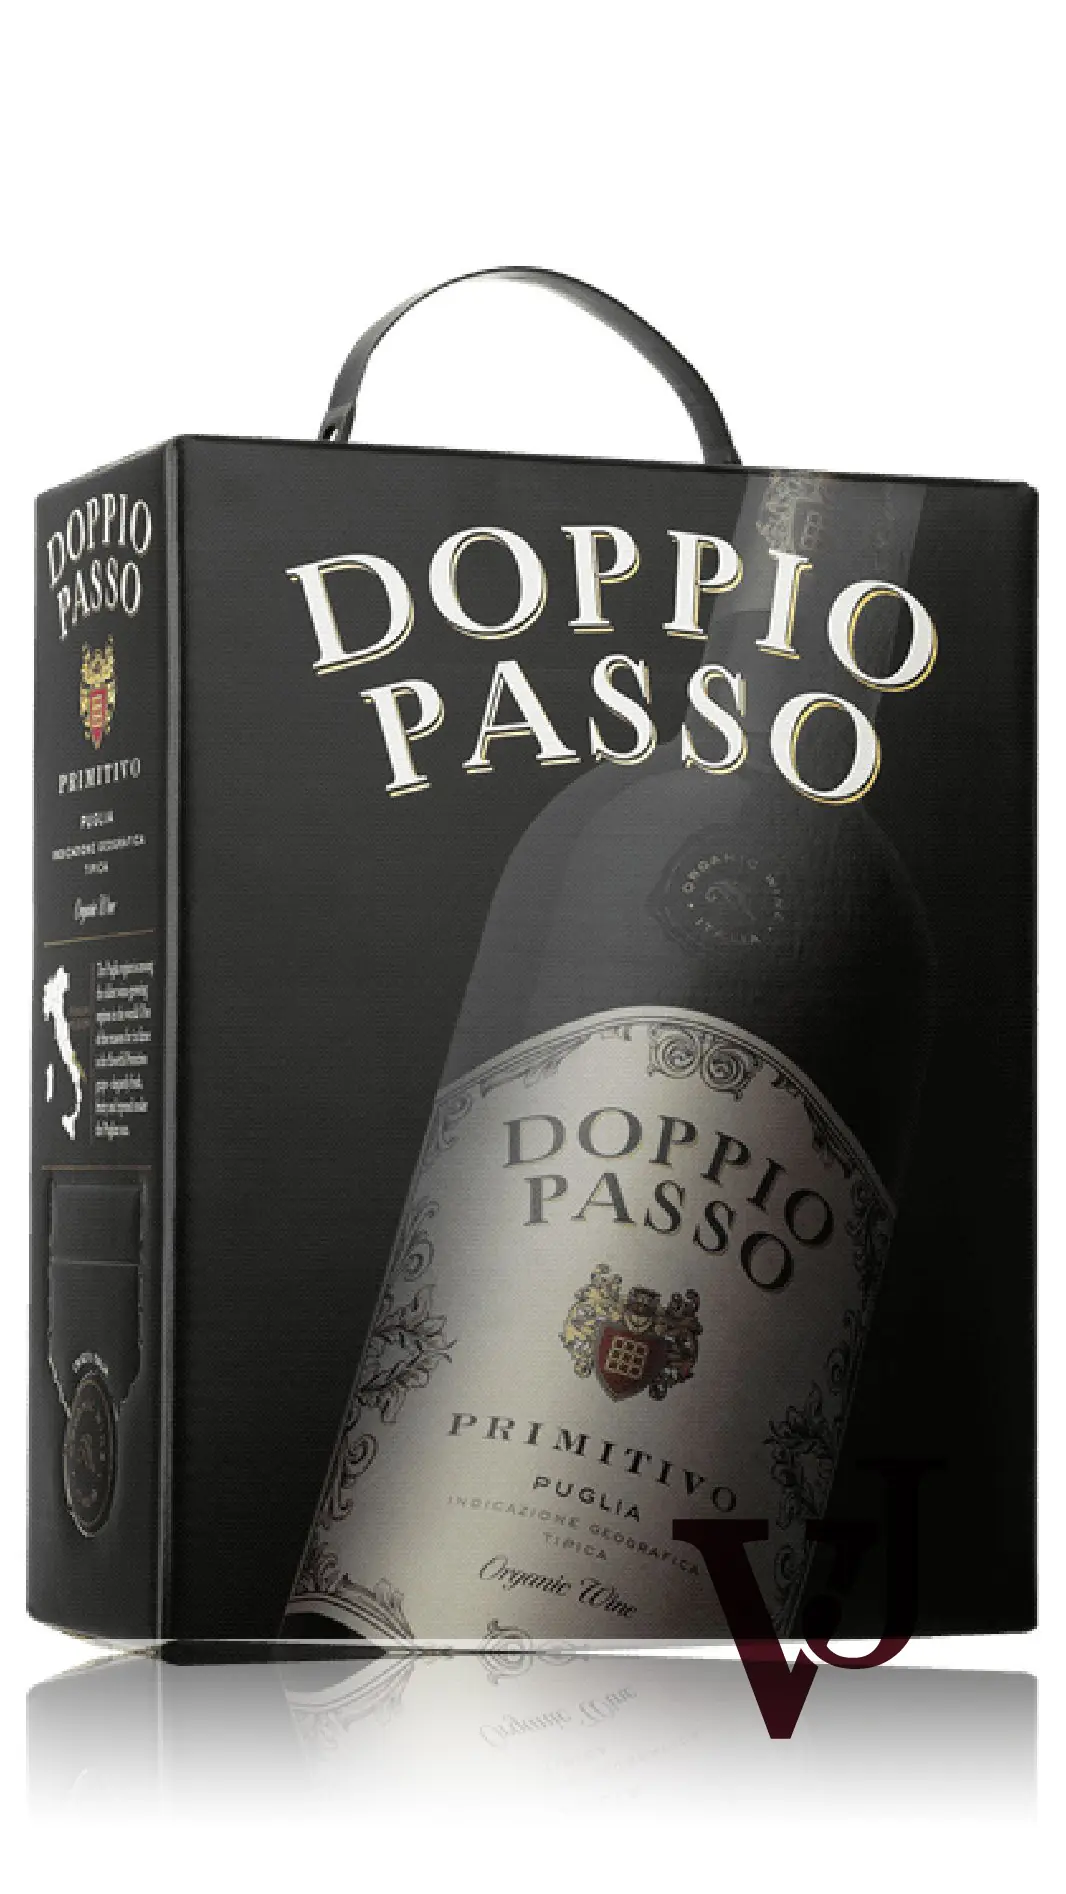 Rött Vin - Doppio Passo Primitivo artikel nummer 320408 från producenten Botter från området Italien - Vinjournalen.se